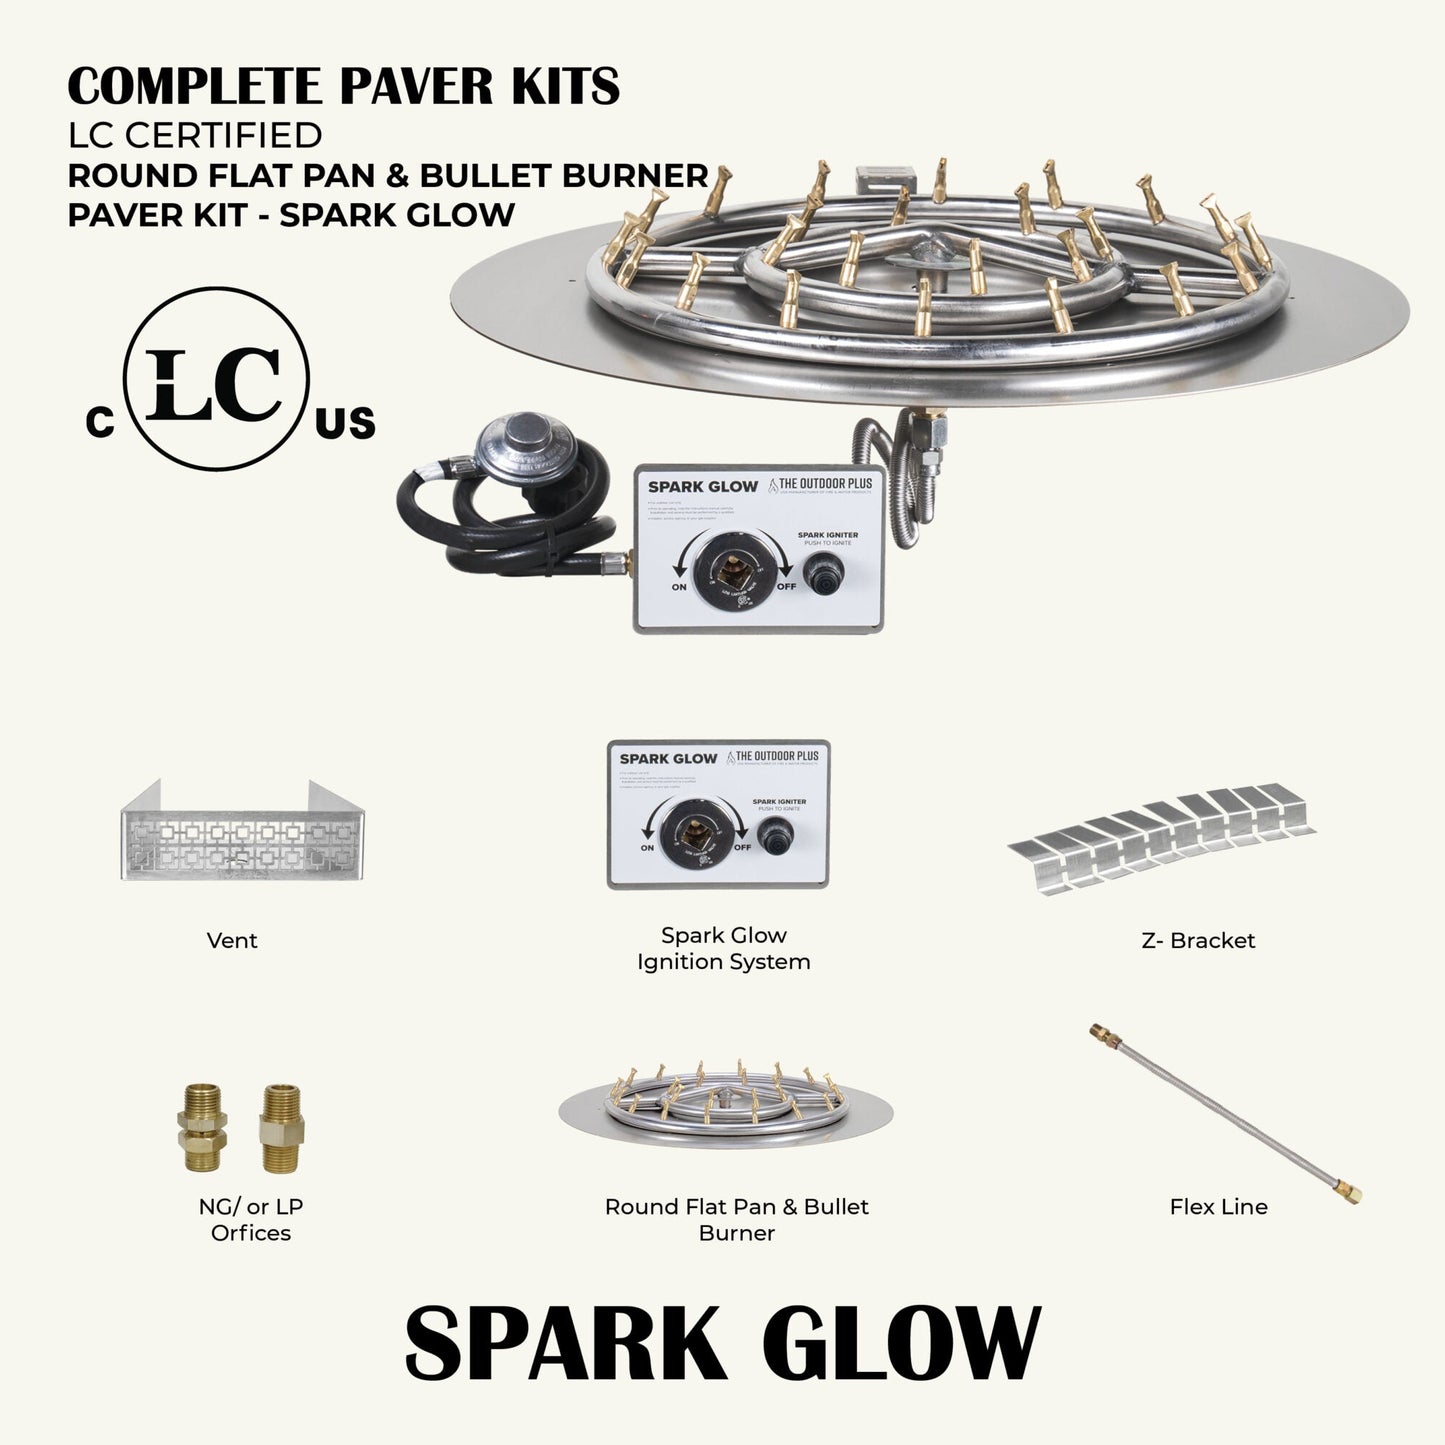 Round Flat Pan & Round Bullet Burner Paver Kit - Spark Glow Ignition